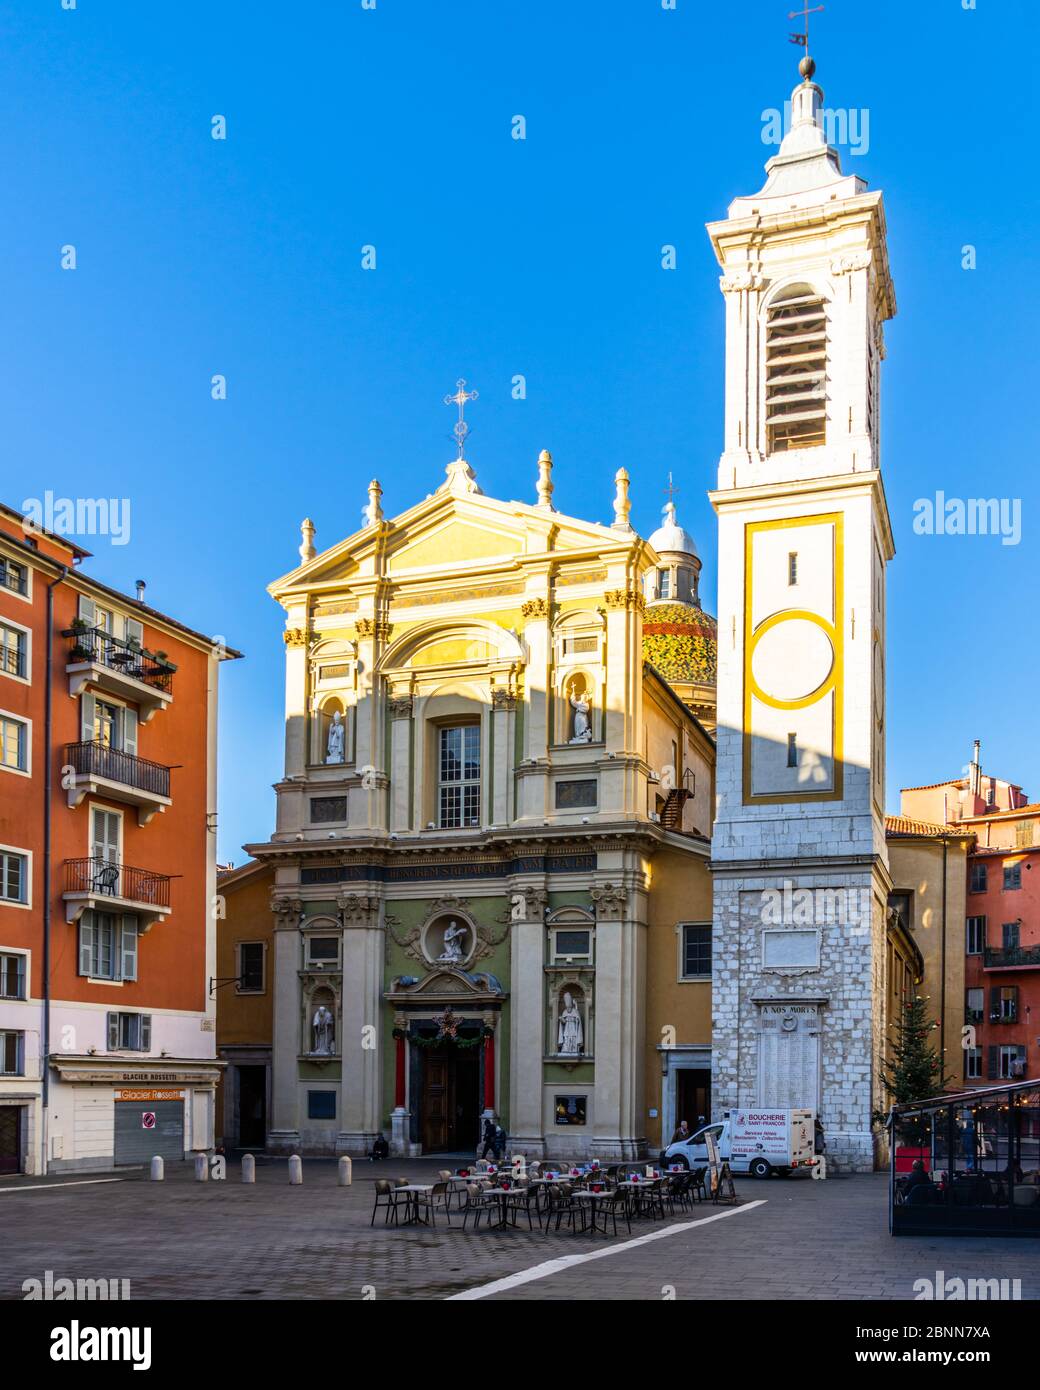 Belle cathédrale (cathédrale Saint Reparata) située dans la vieille ville de Nice. Nice, France, janvier 2020 Banque D'Images